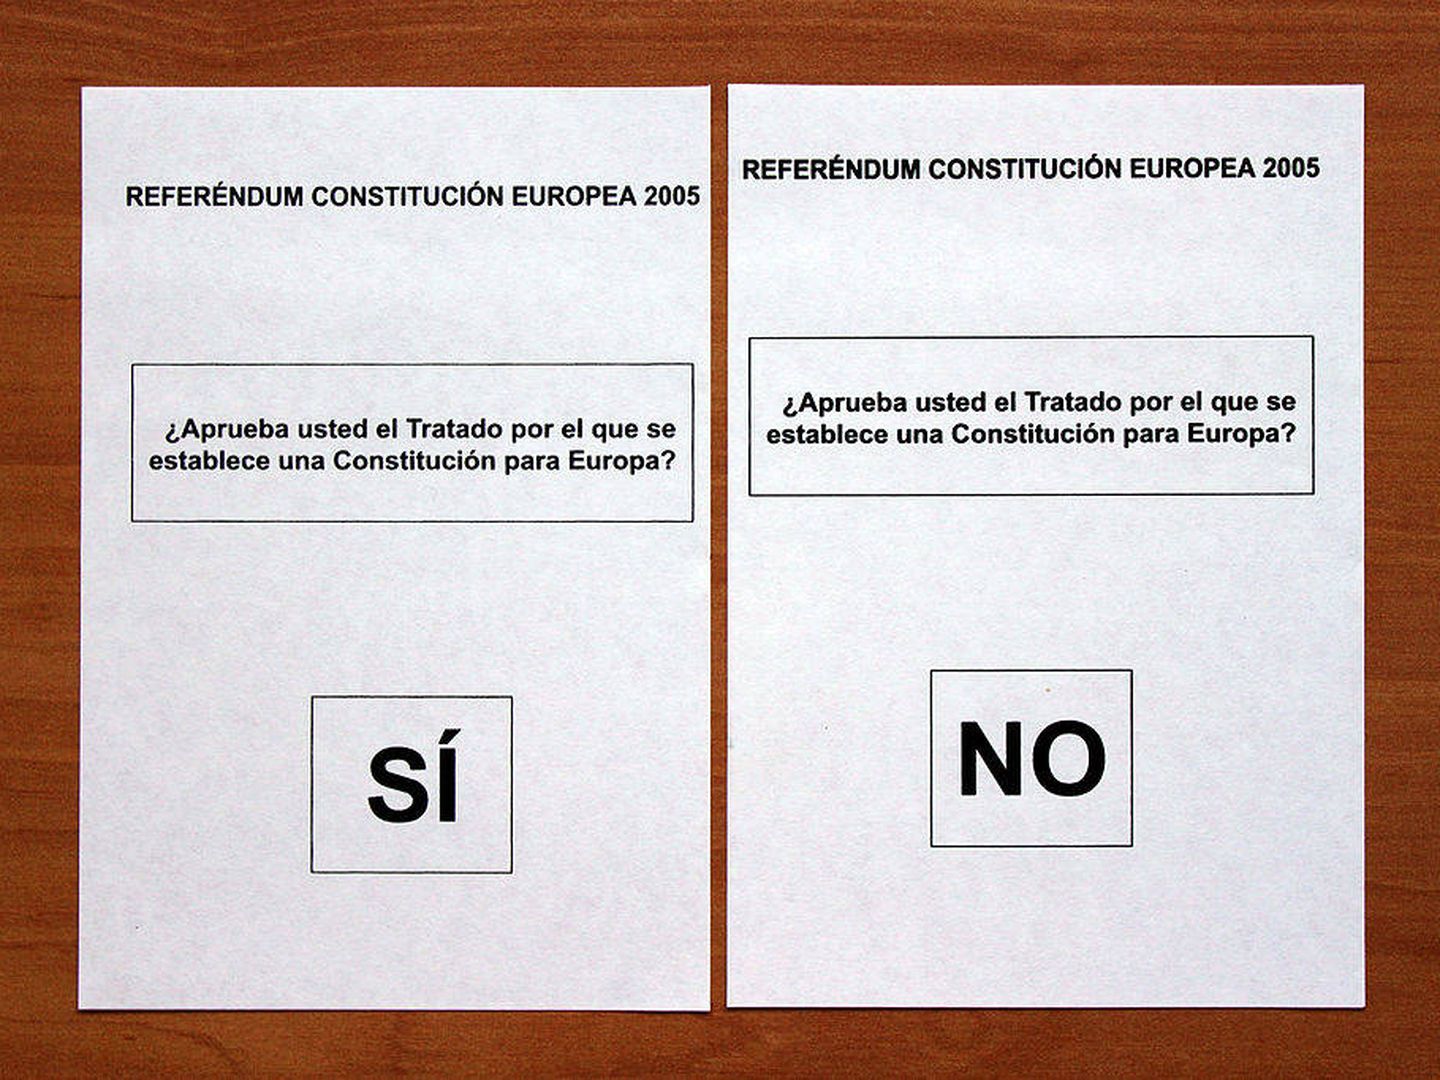 La primera vez que se experimentó con este tipo de elección en el país fue en 2005, aprovechando el referéndum planteado para aprobar o rechazar la Constitución Europea.